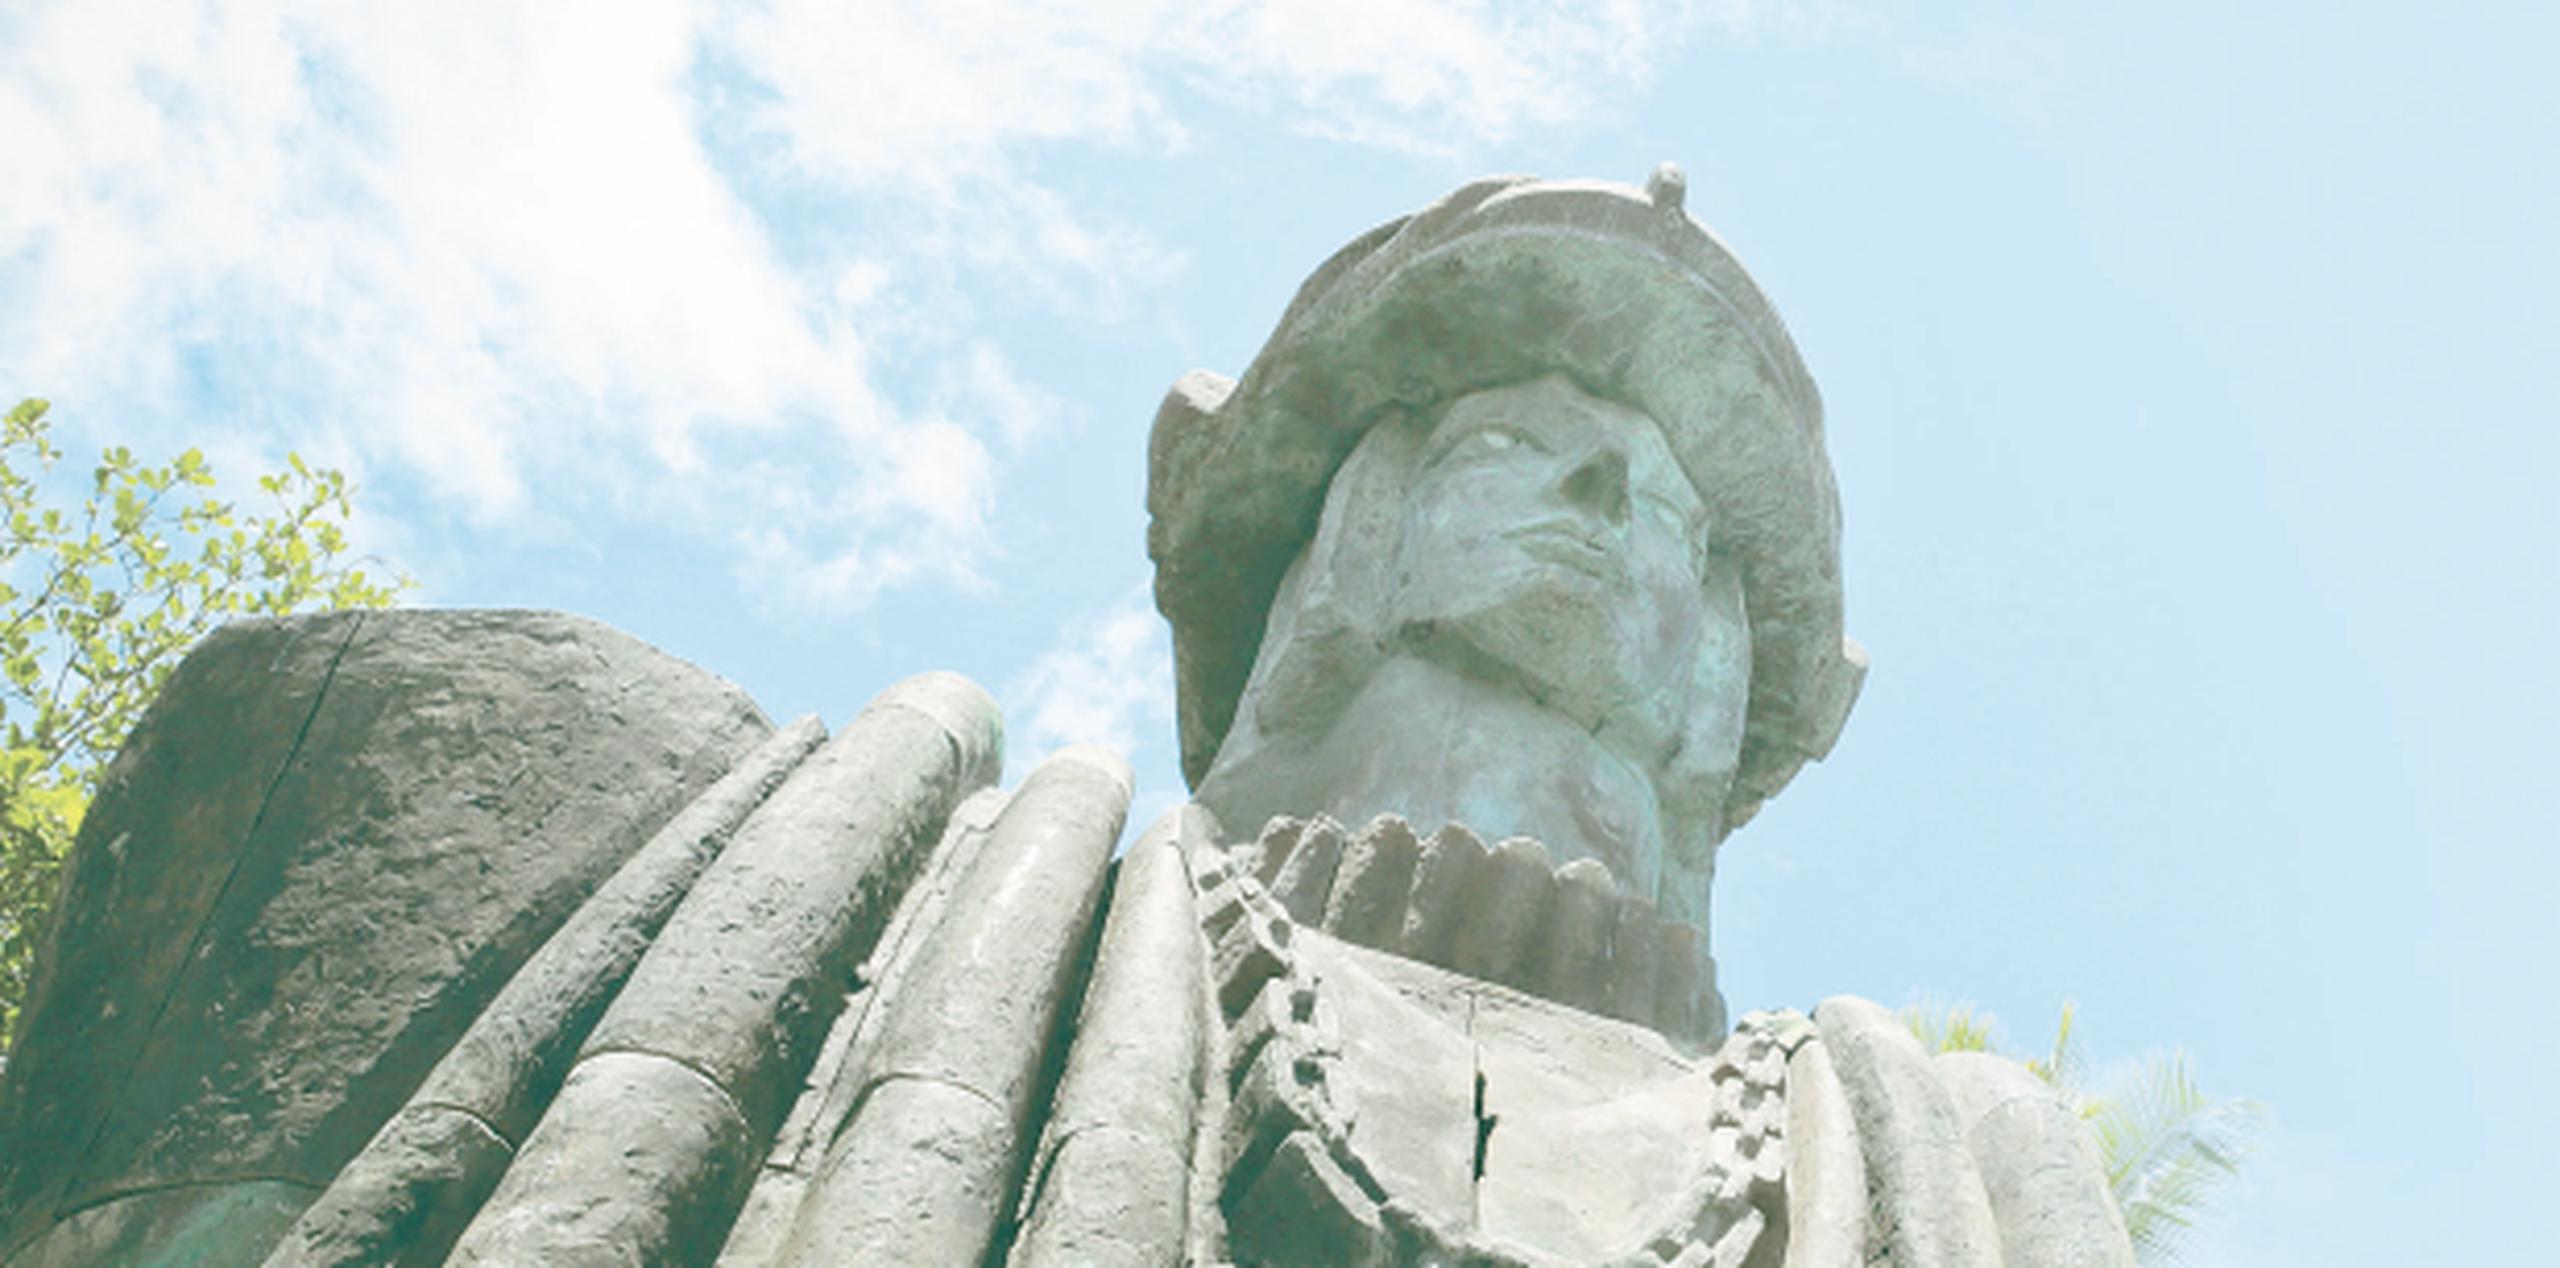 Son 15 negocios nuevos que, según el alcalde Carlos Molina, se han establecido en Islote  gracias a la estatua de Cristóbal Colón. (wandaliz.vega@gfrmedia.com)